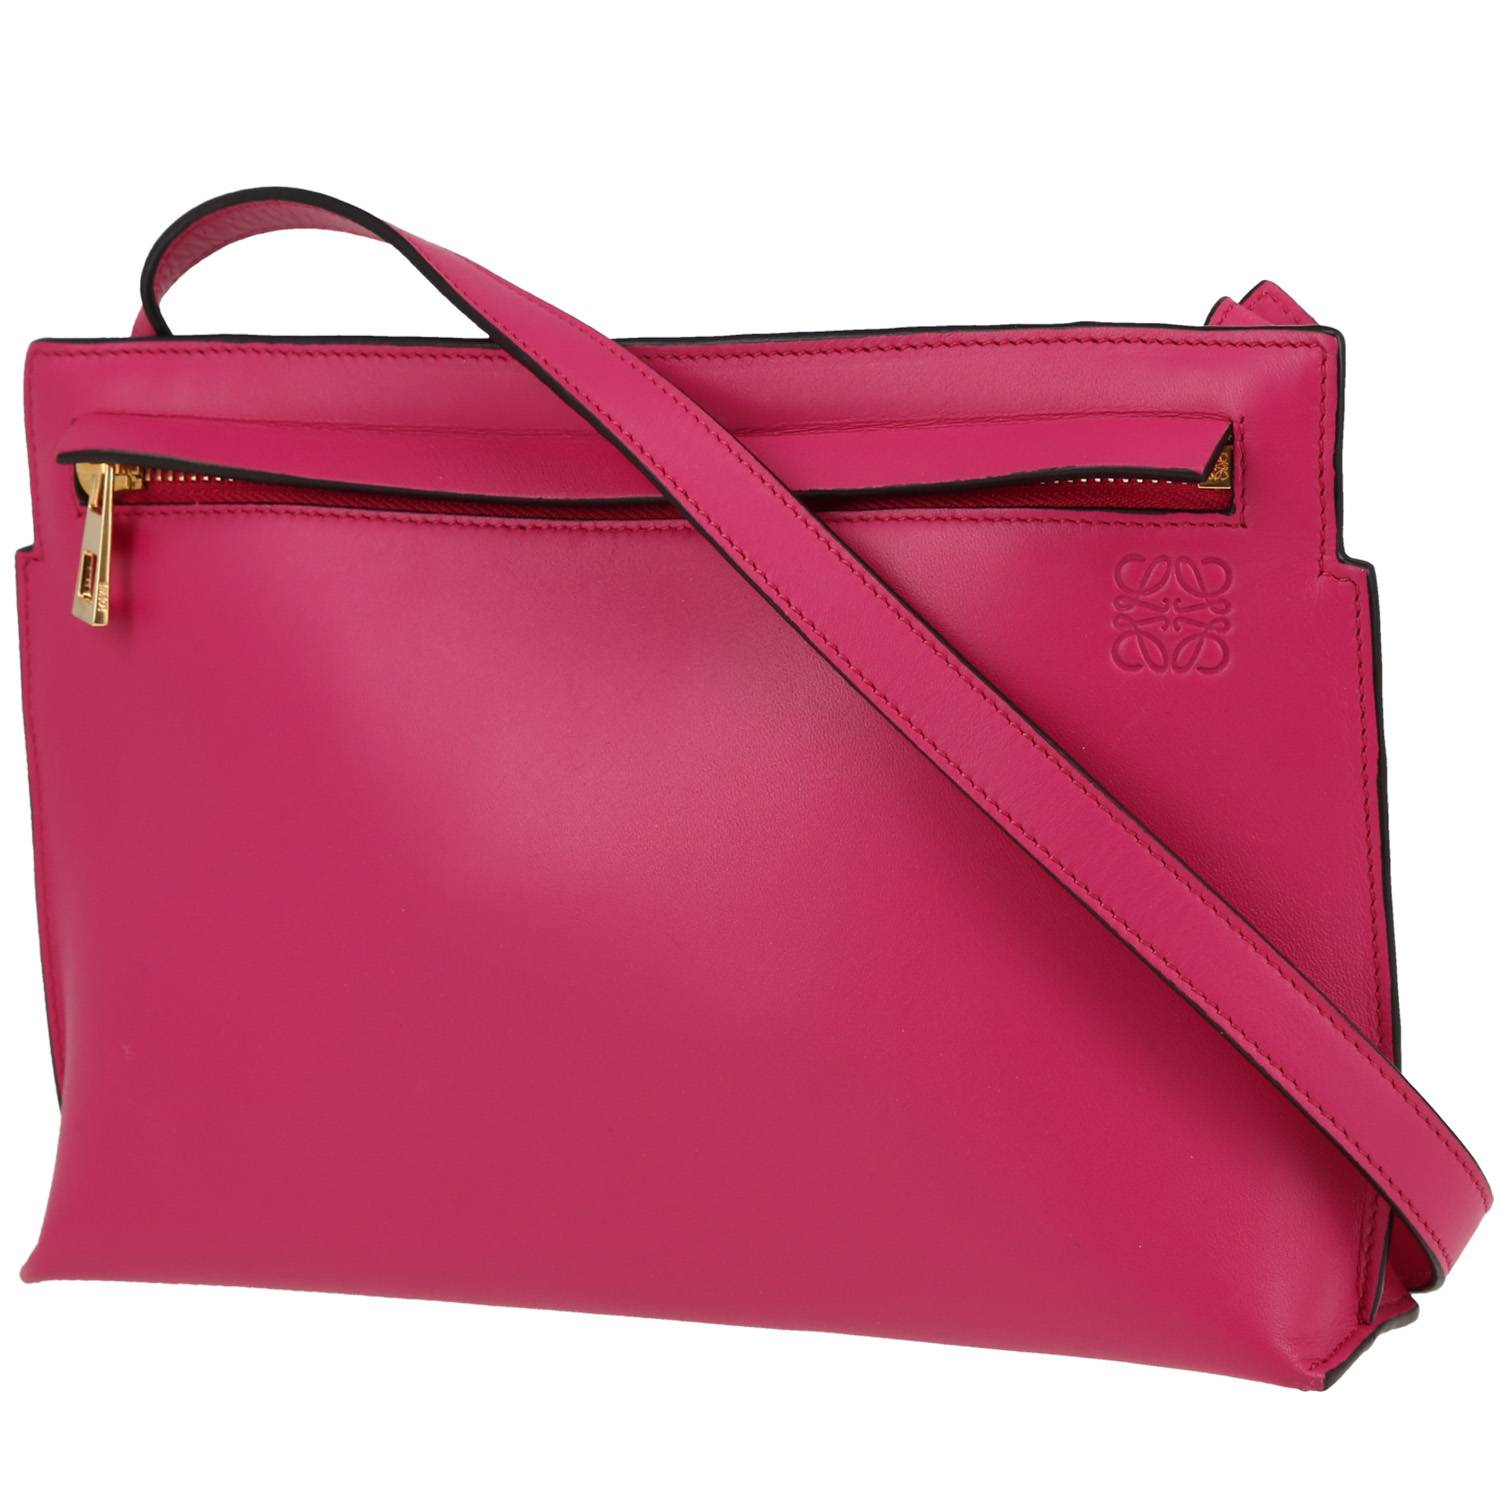 Pocket Shoulder Bag In Pink Leather